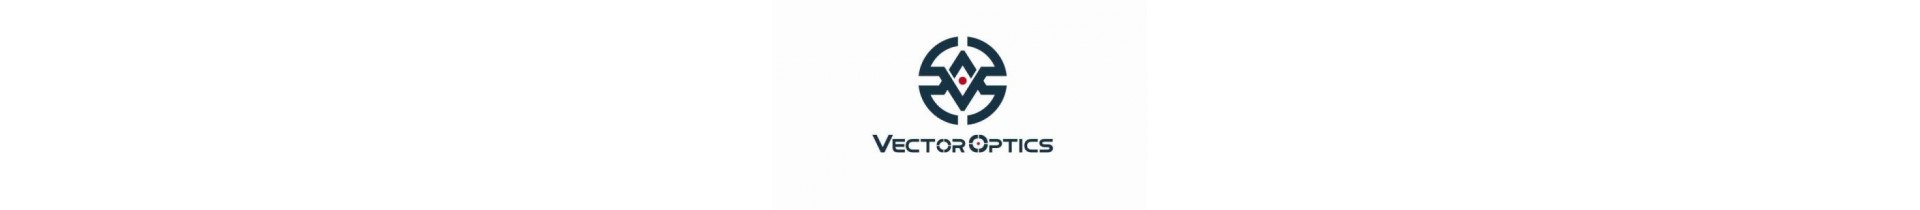 Retrouvez sur www.tactirshop.fr toute la gamme des produits Vector Optics